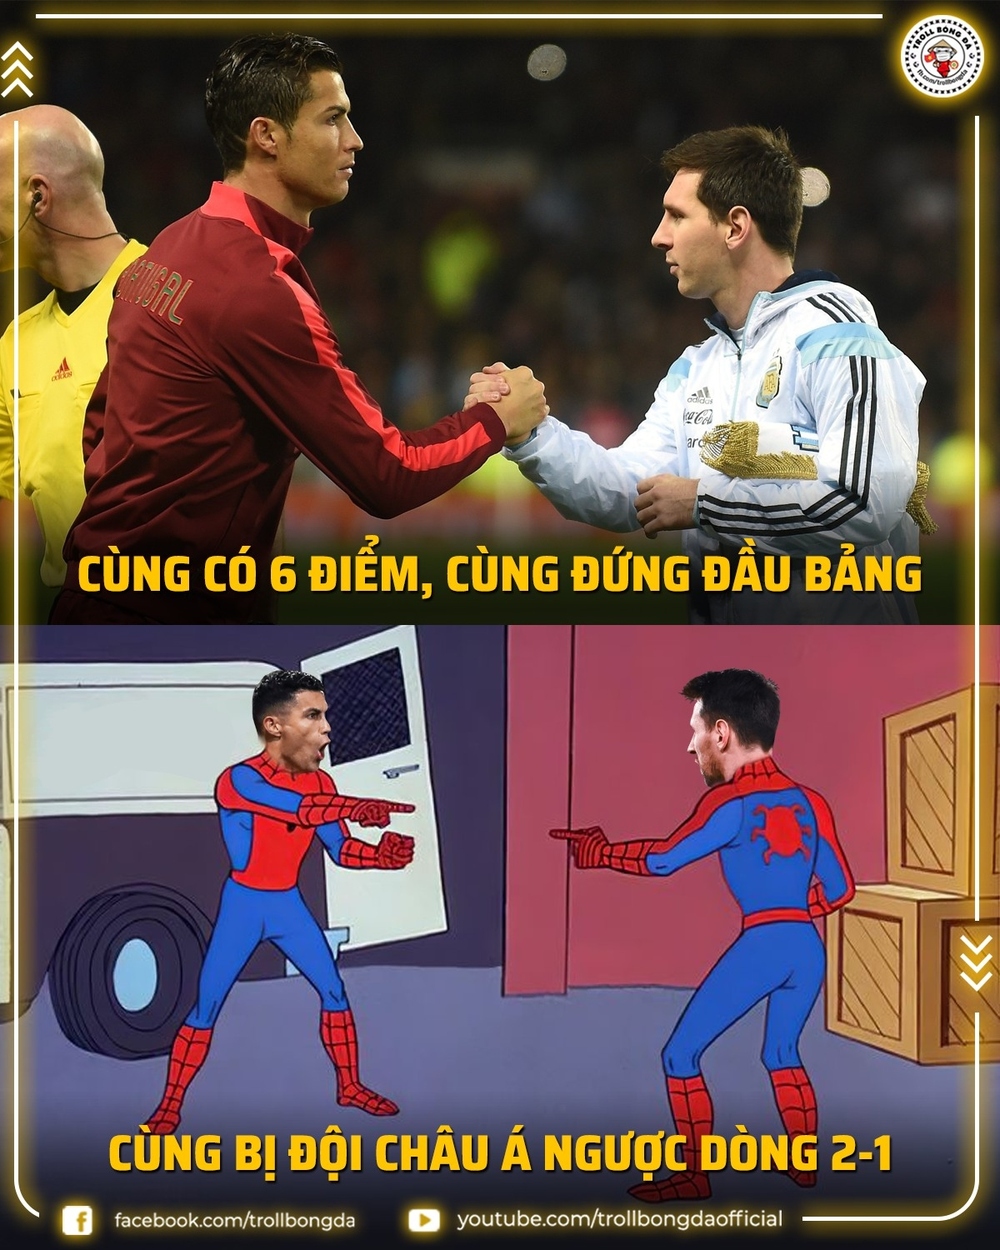 Biếm hoạ 24h: Ronaldo và Messi tìm thấy điểm tương đồng ở World Cup 2022 - Ảnh 2.